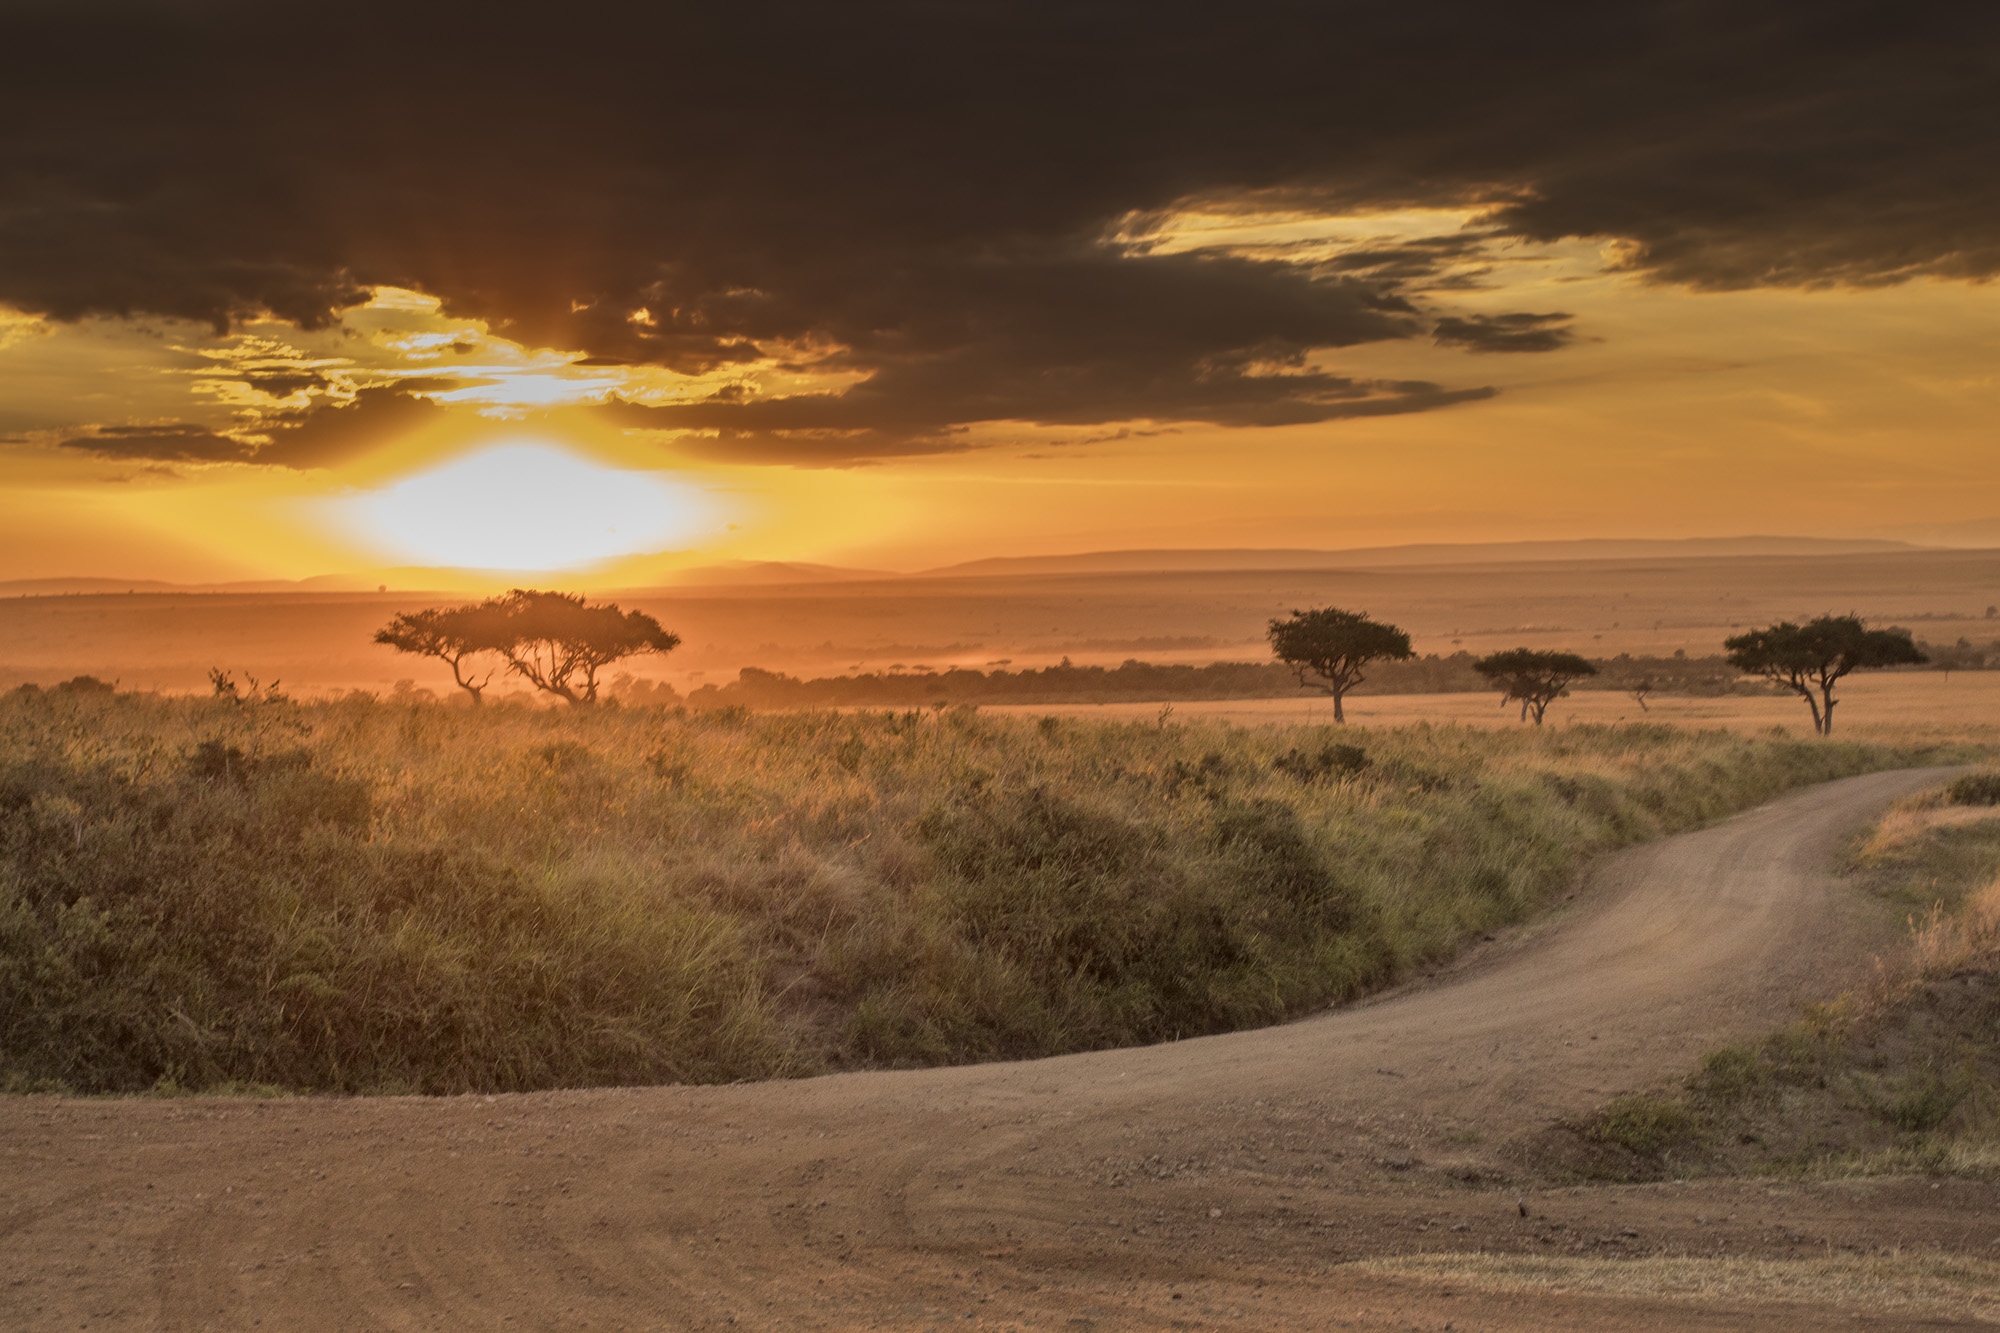 A sunrise over Masai Mara in Kenya